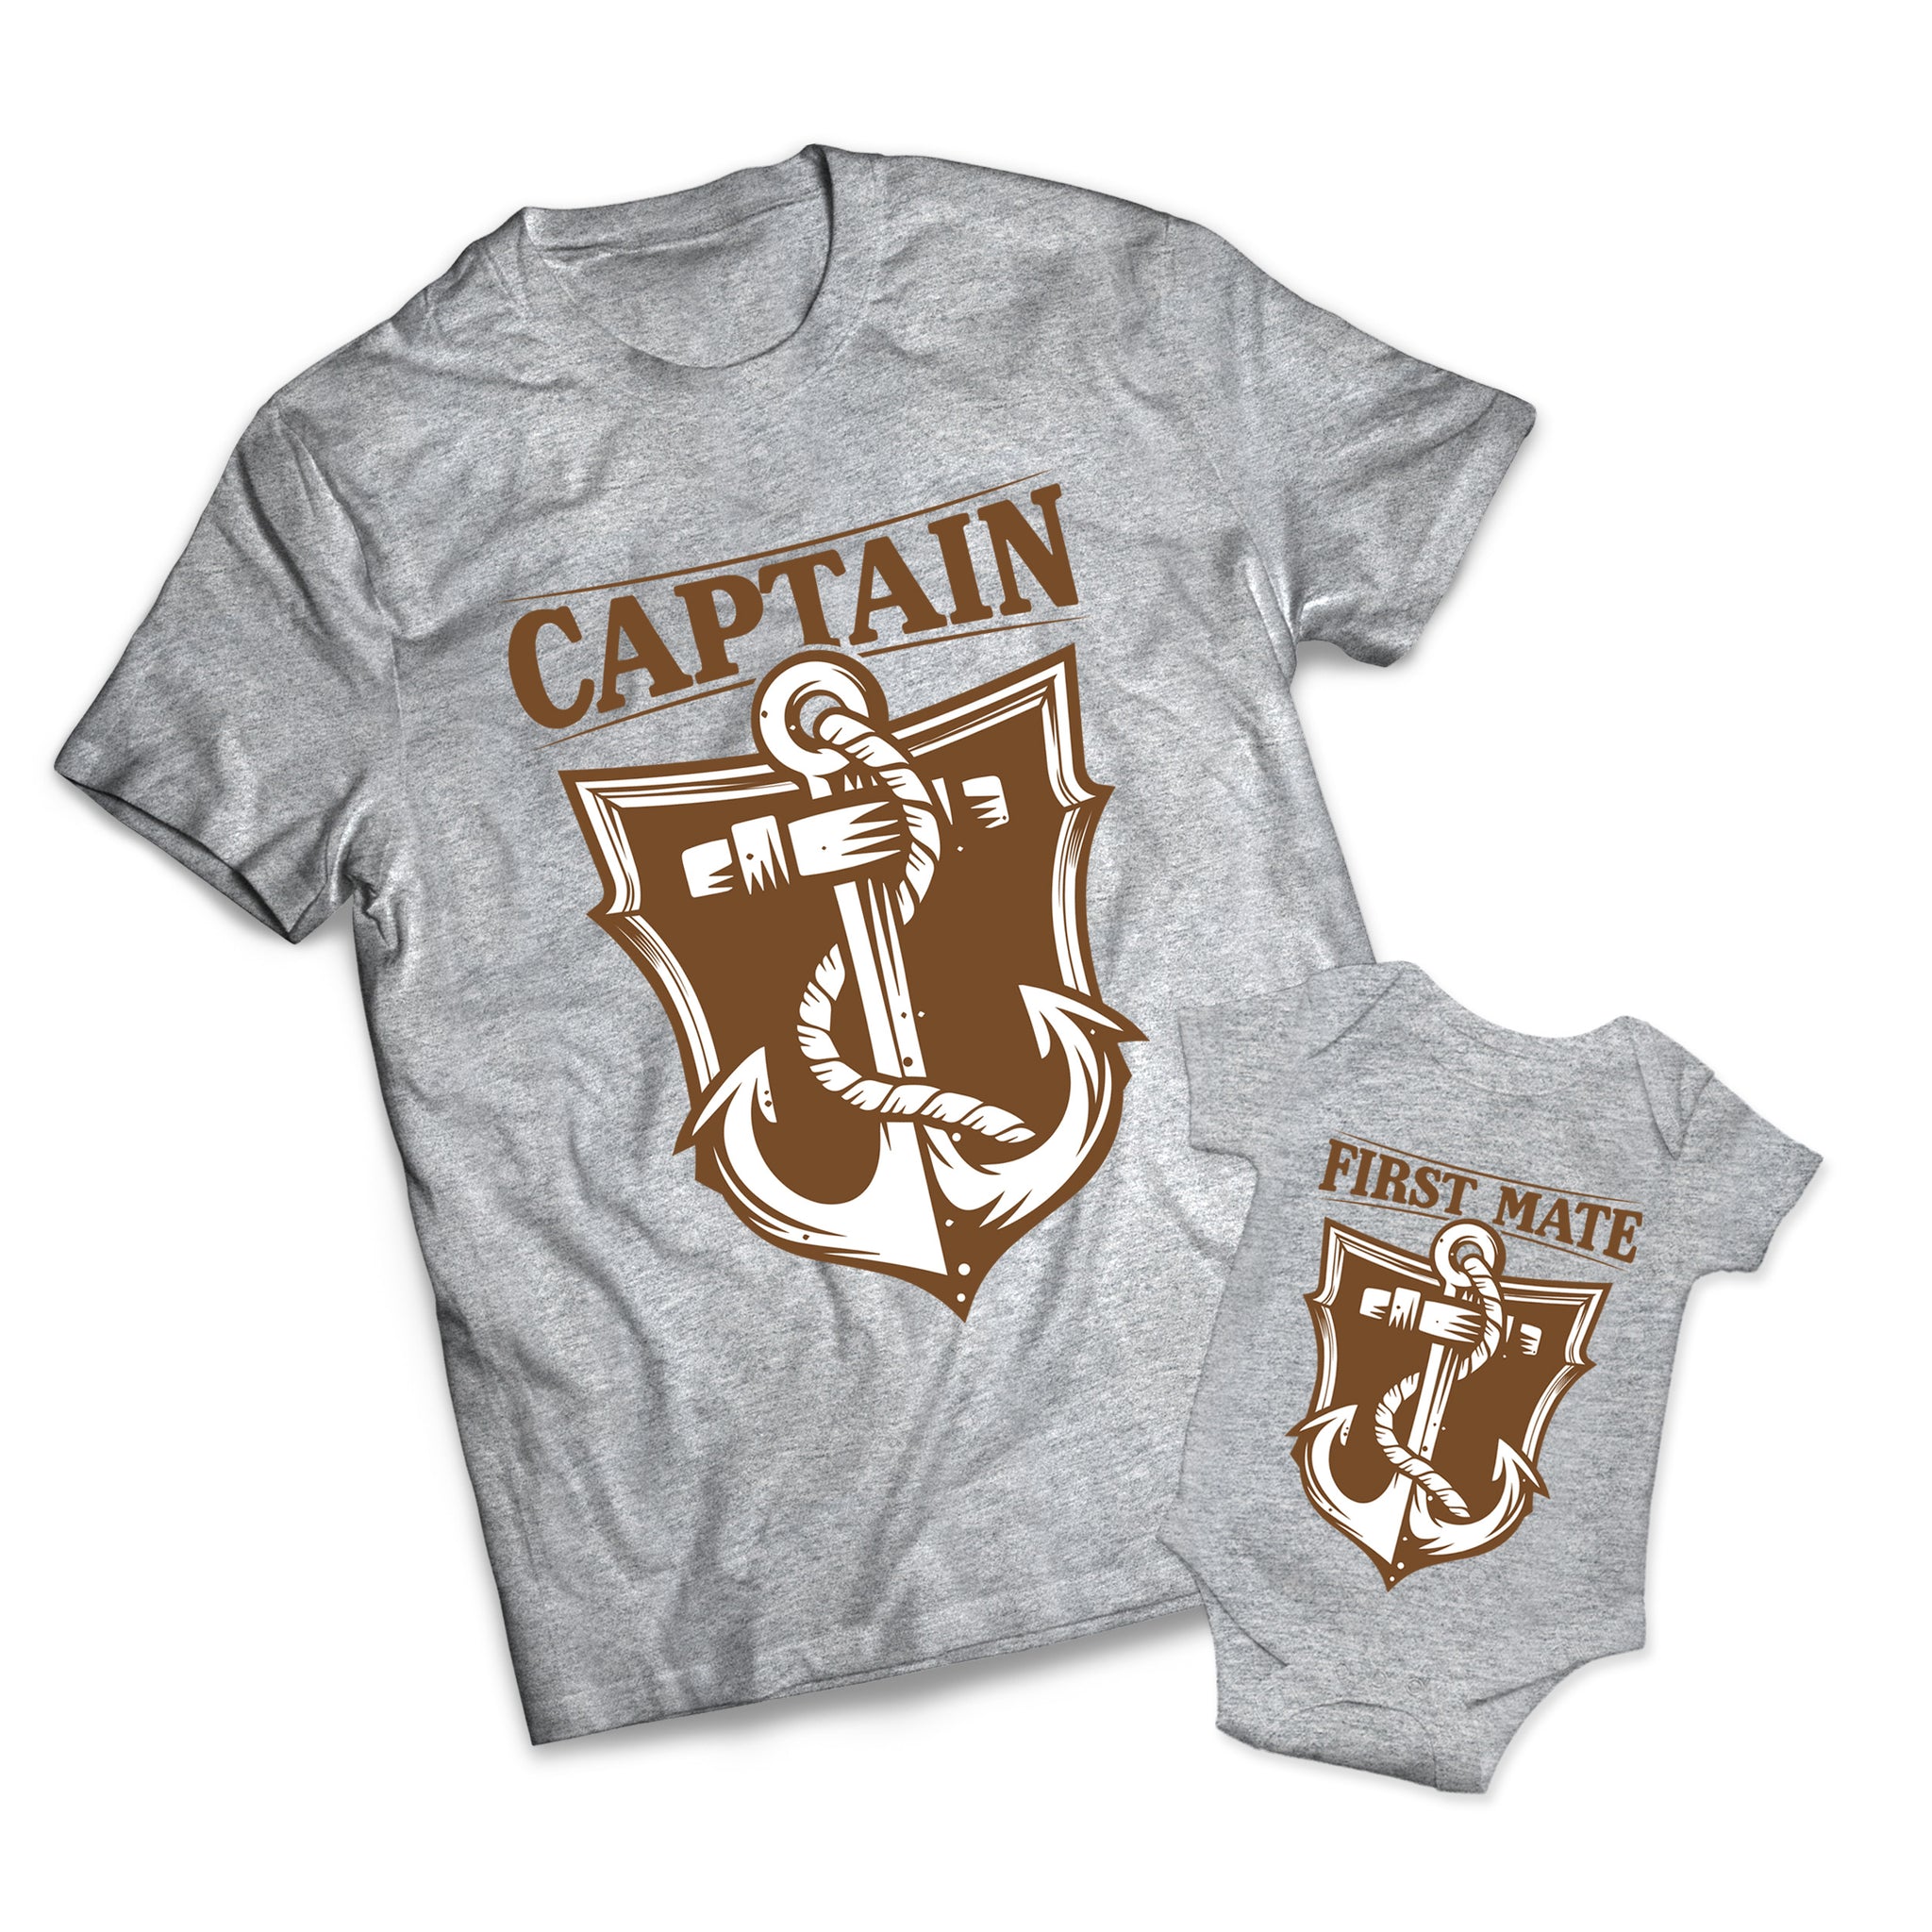 Sailor Rank Set - Navy -  Matching Shirts